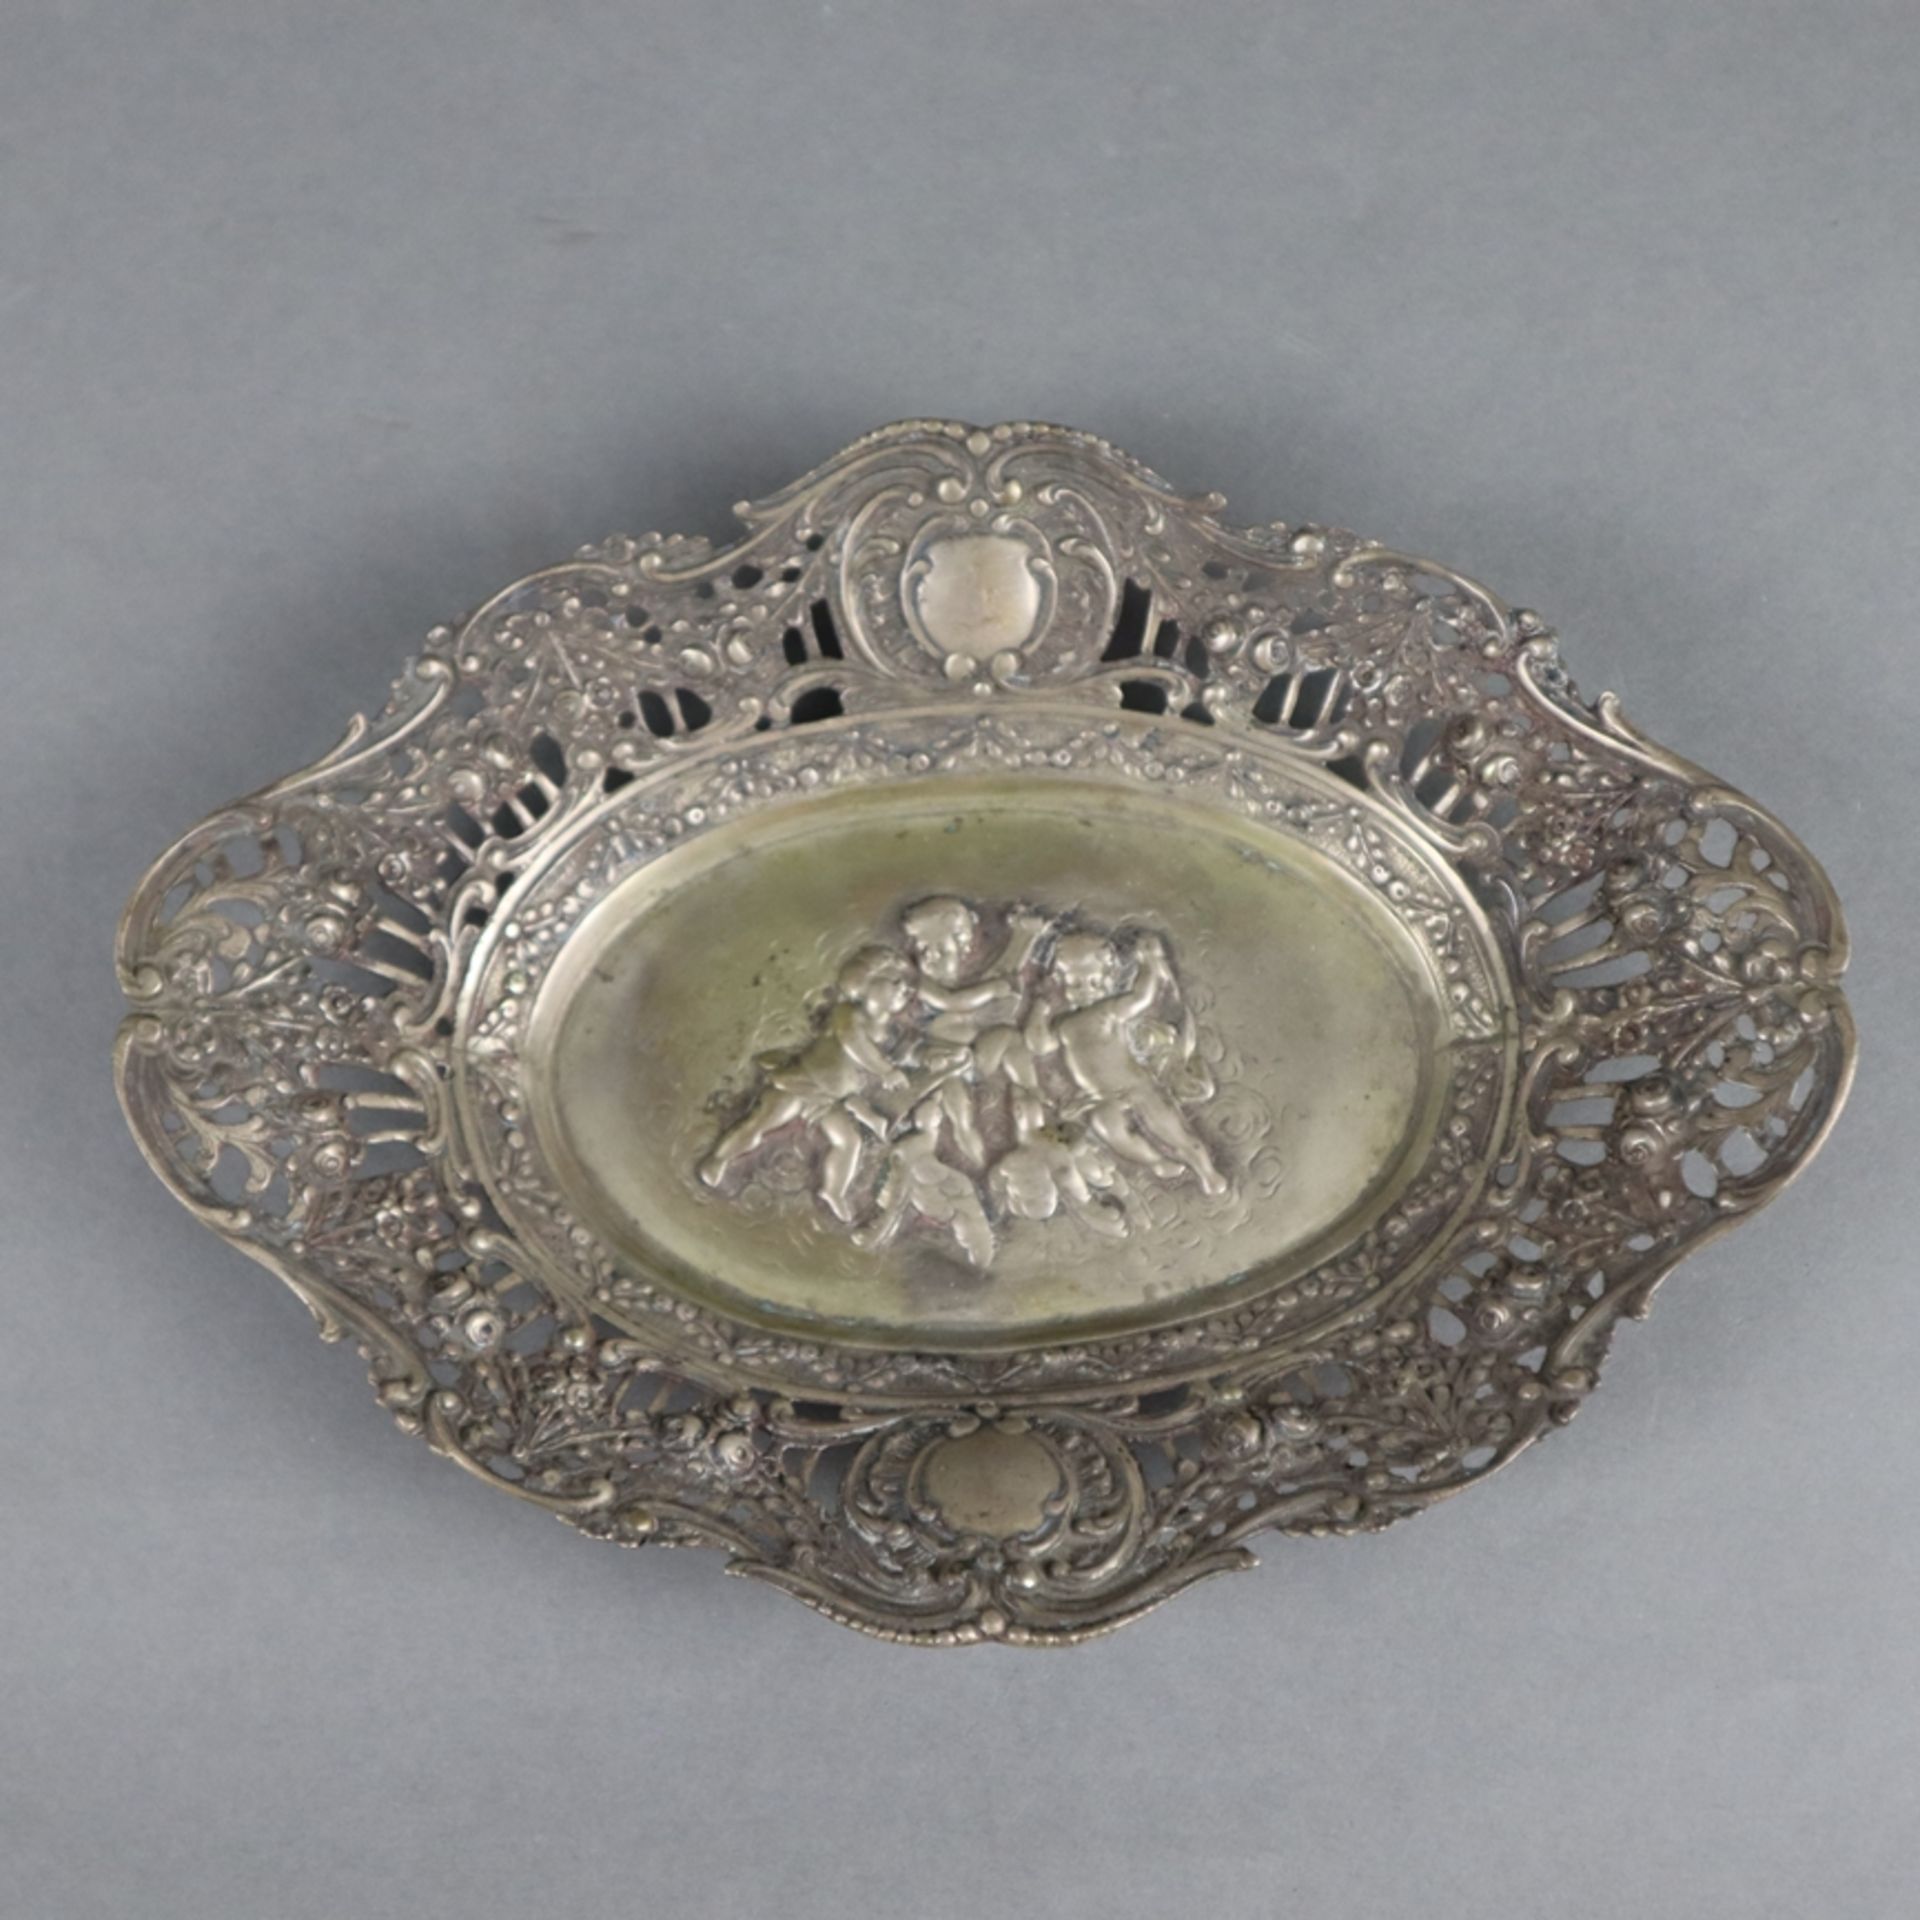 Ovale Korbschale - 800er Silber, gestempelt, im Spiegel Puttendekor im Relief, durchbrochene Fahne